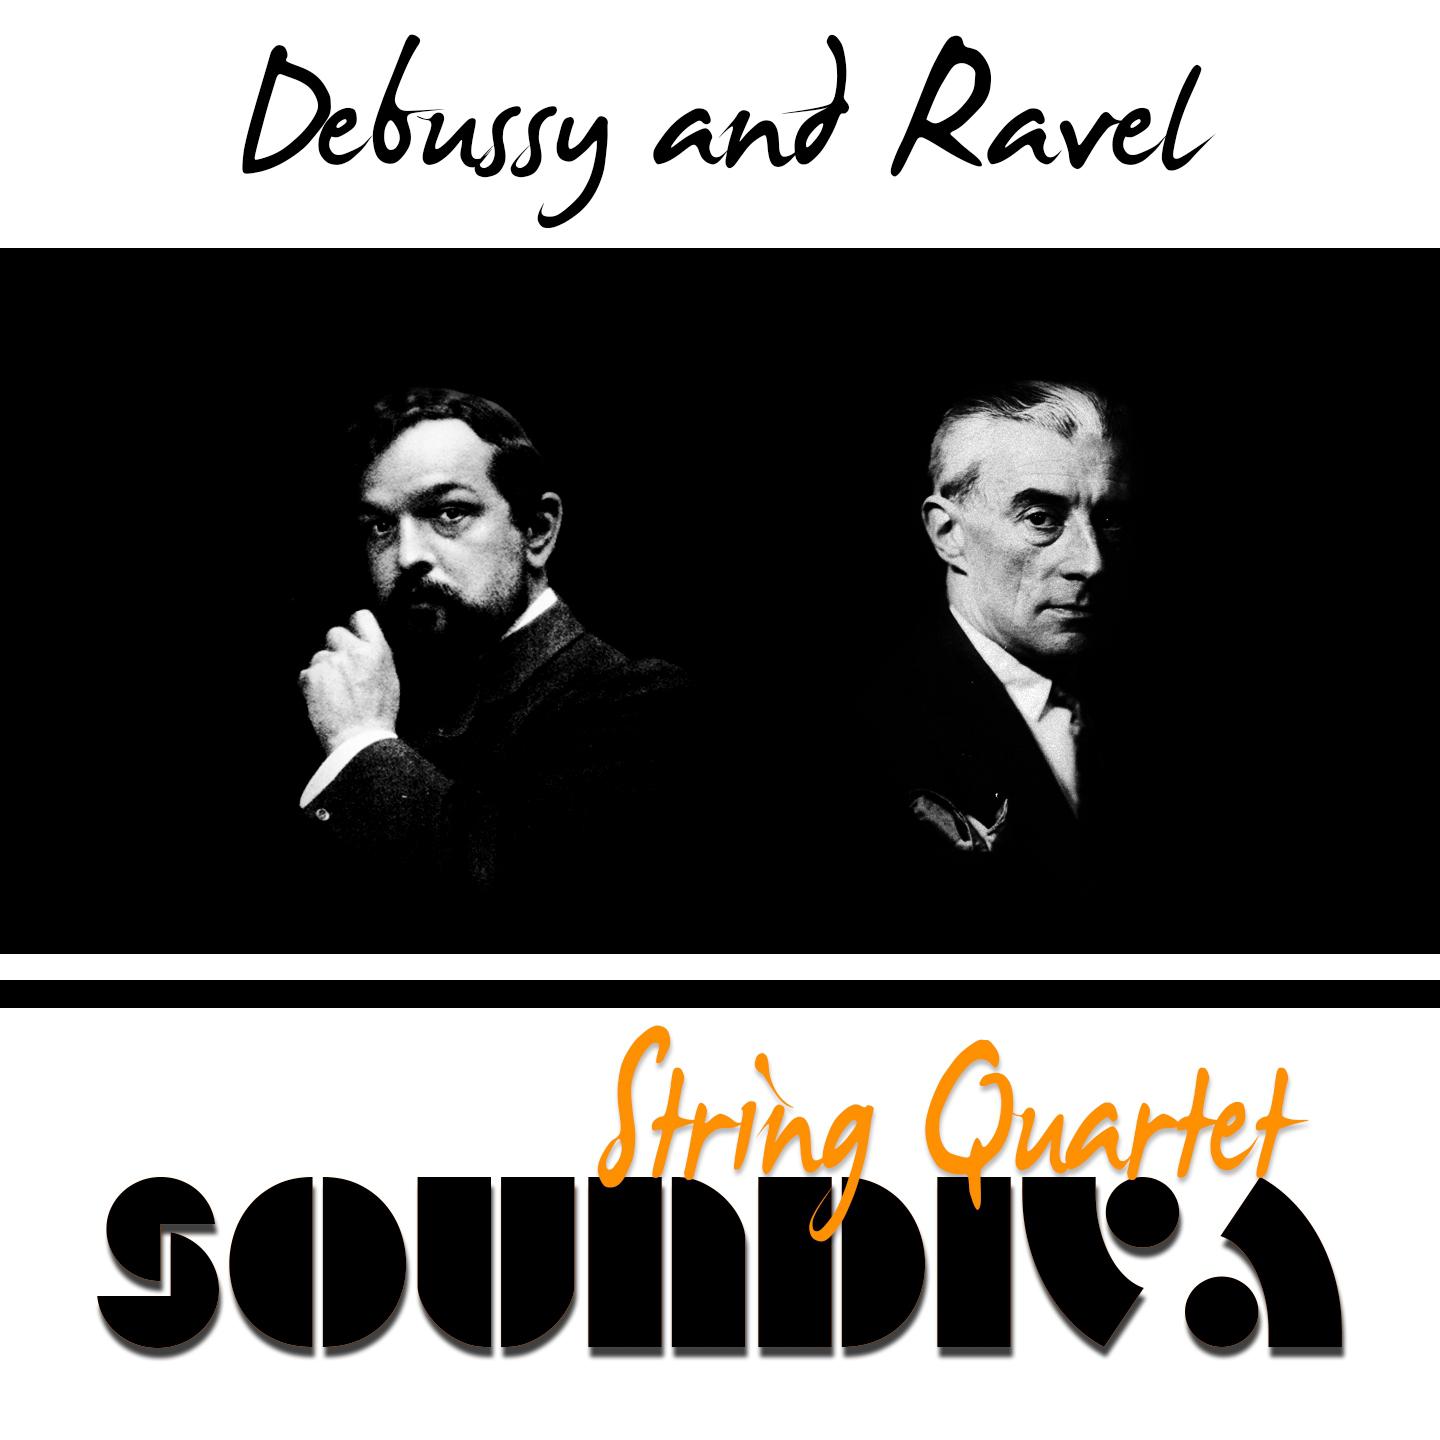 Постер альбома Debussy & Ravel: String Quartets